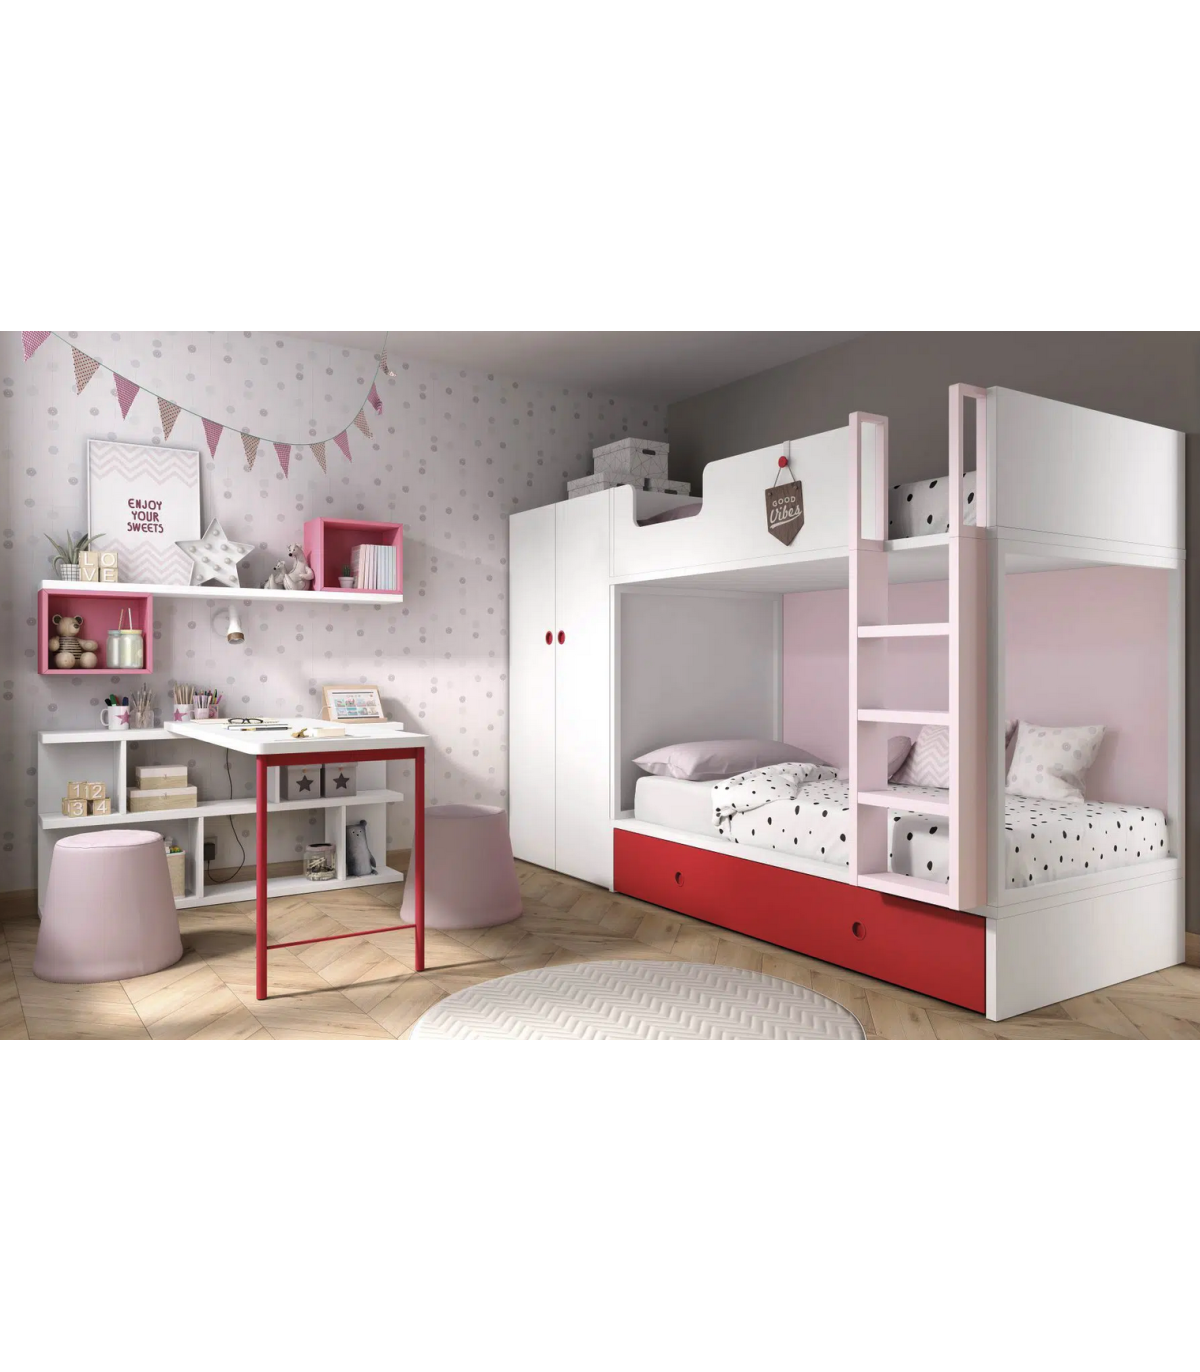 Complementos interior de armario - Muebles ROS